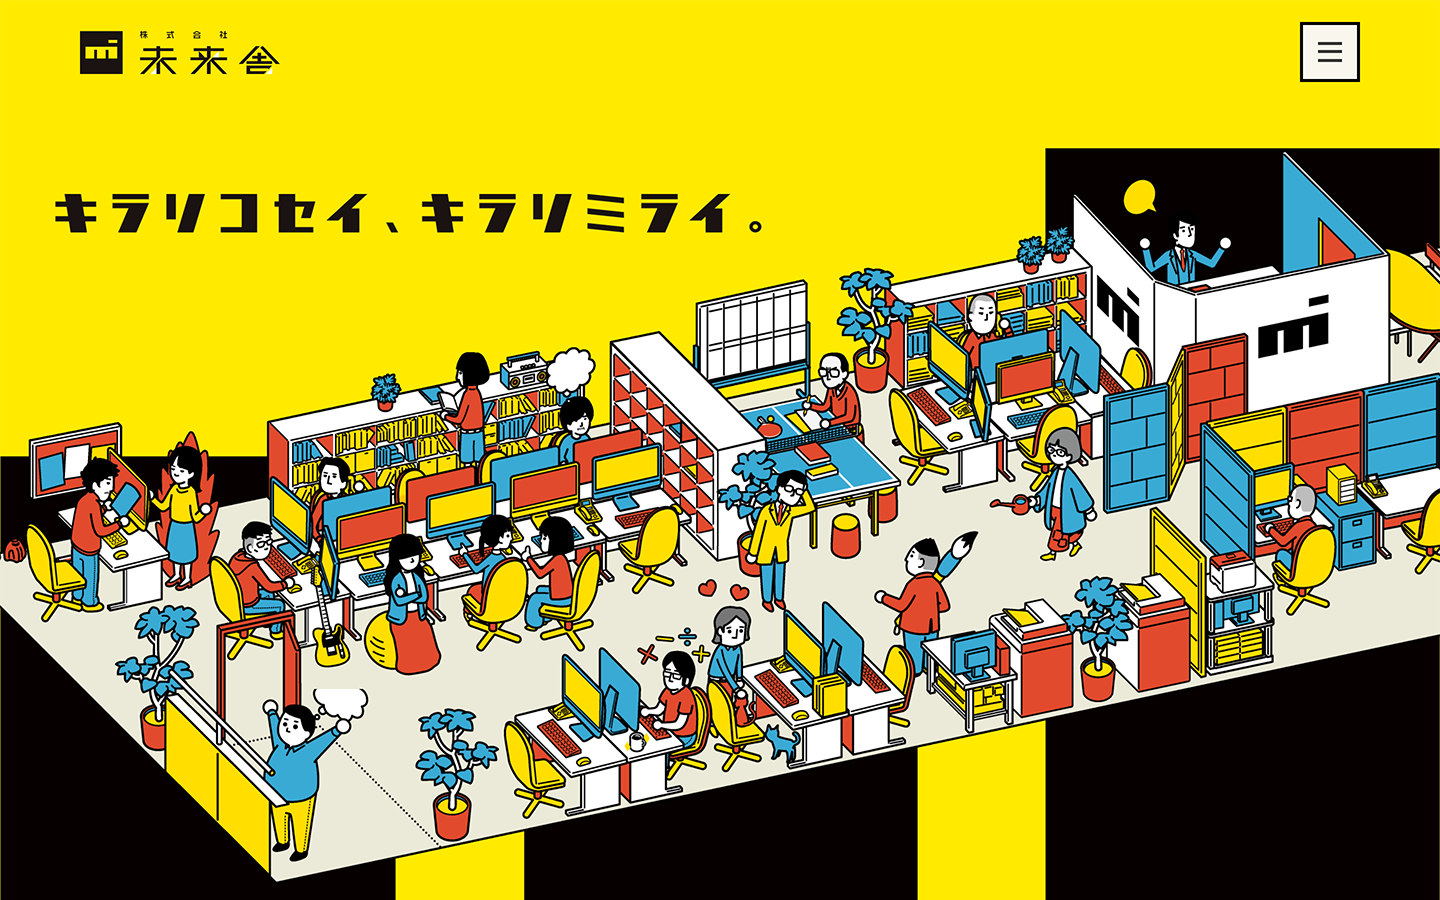 大阪、堺筋本町を拠点としたデザイン、企画、冊子制作（Indesign）なら株式会社未来舎